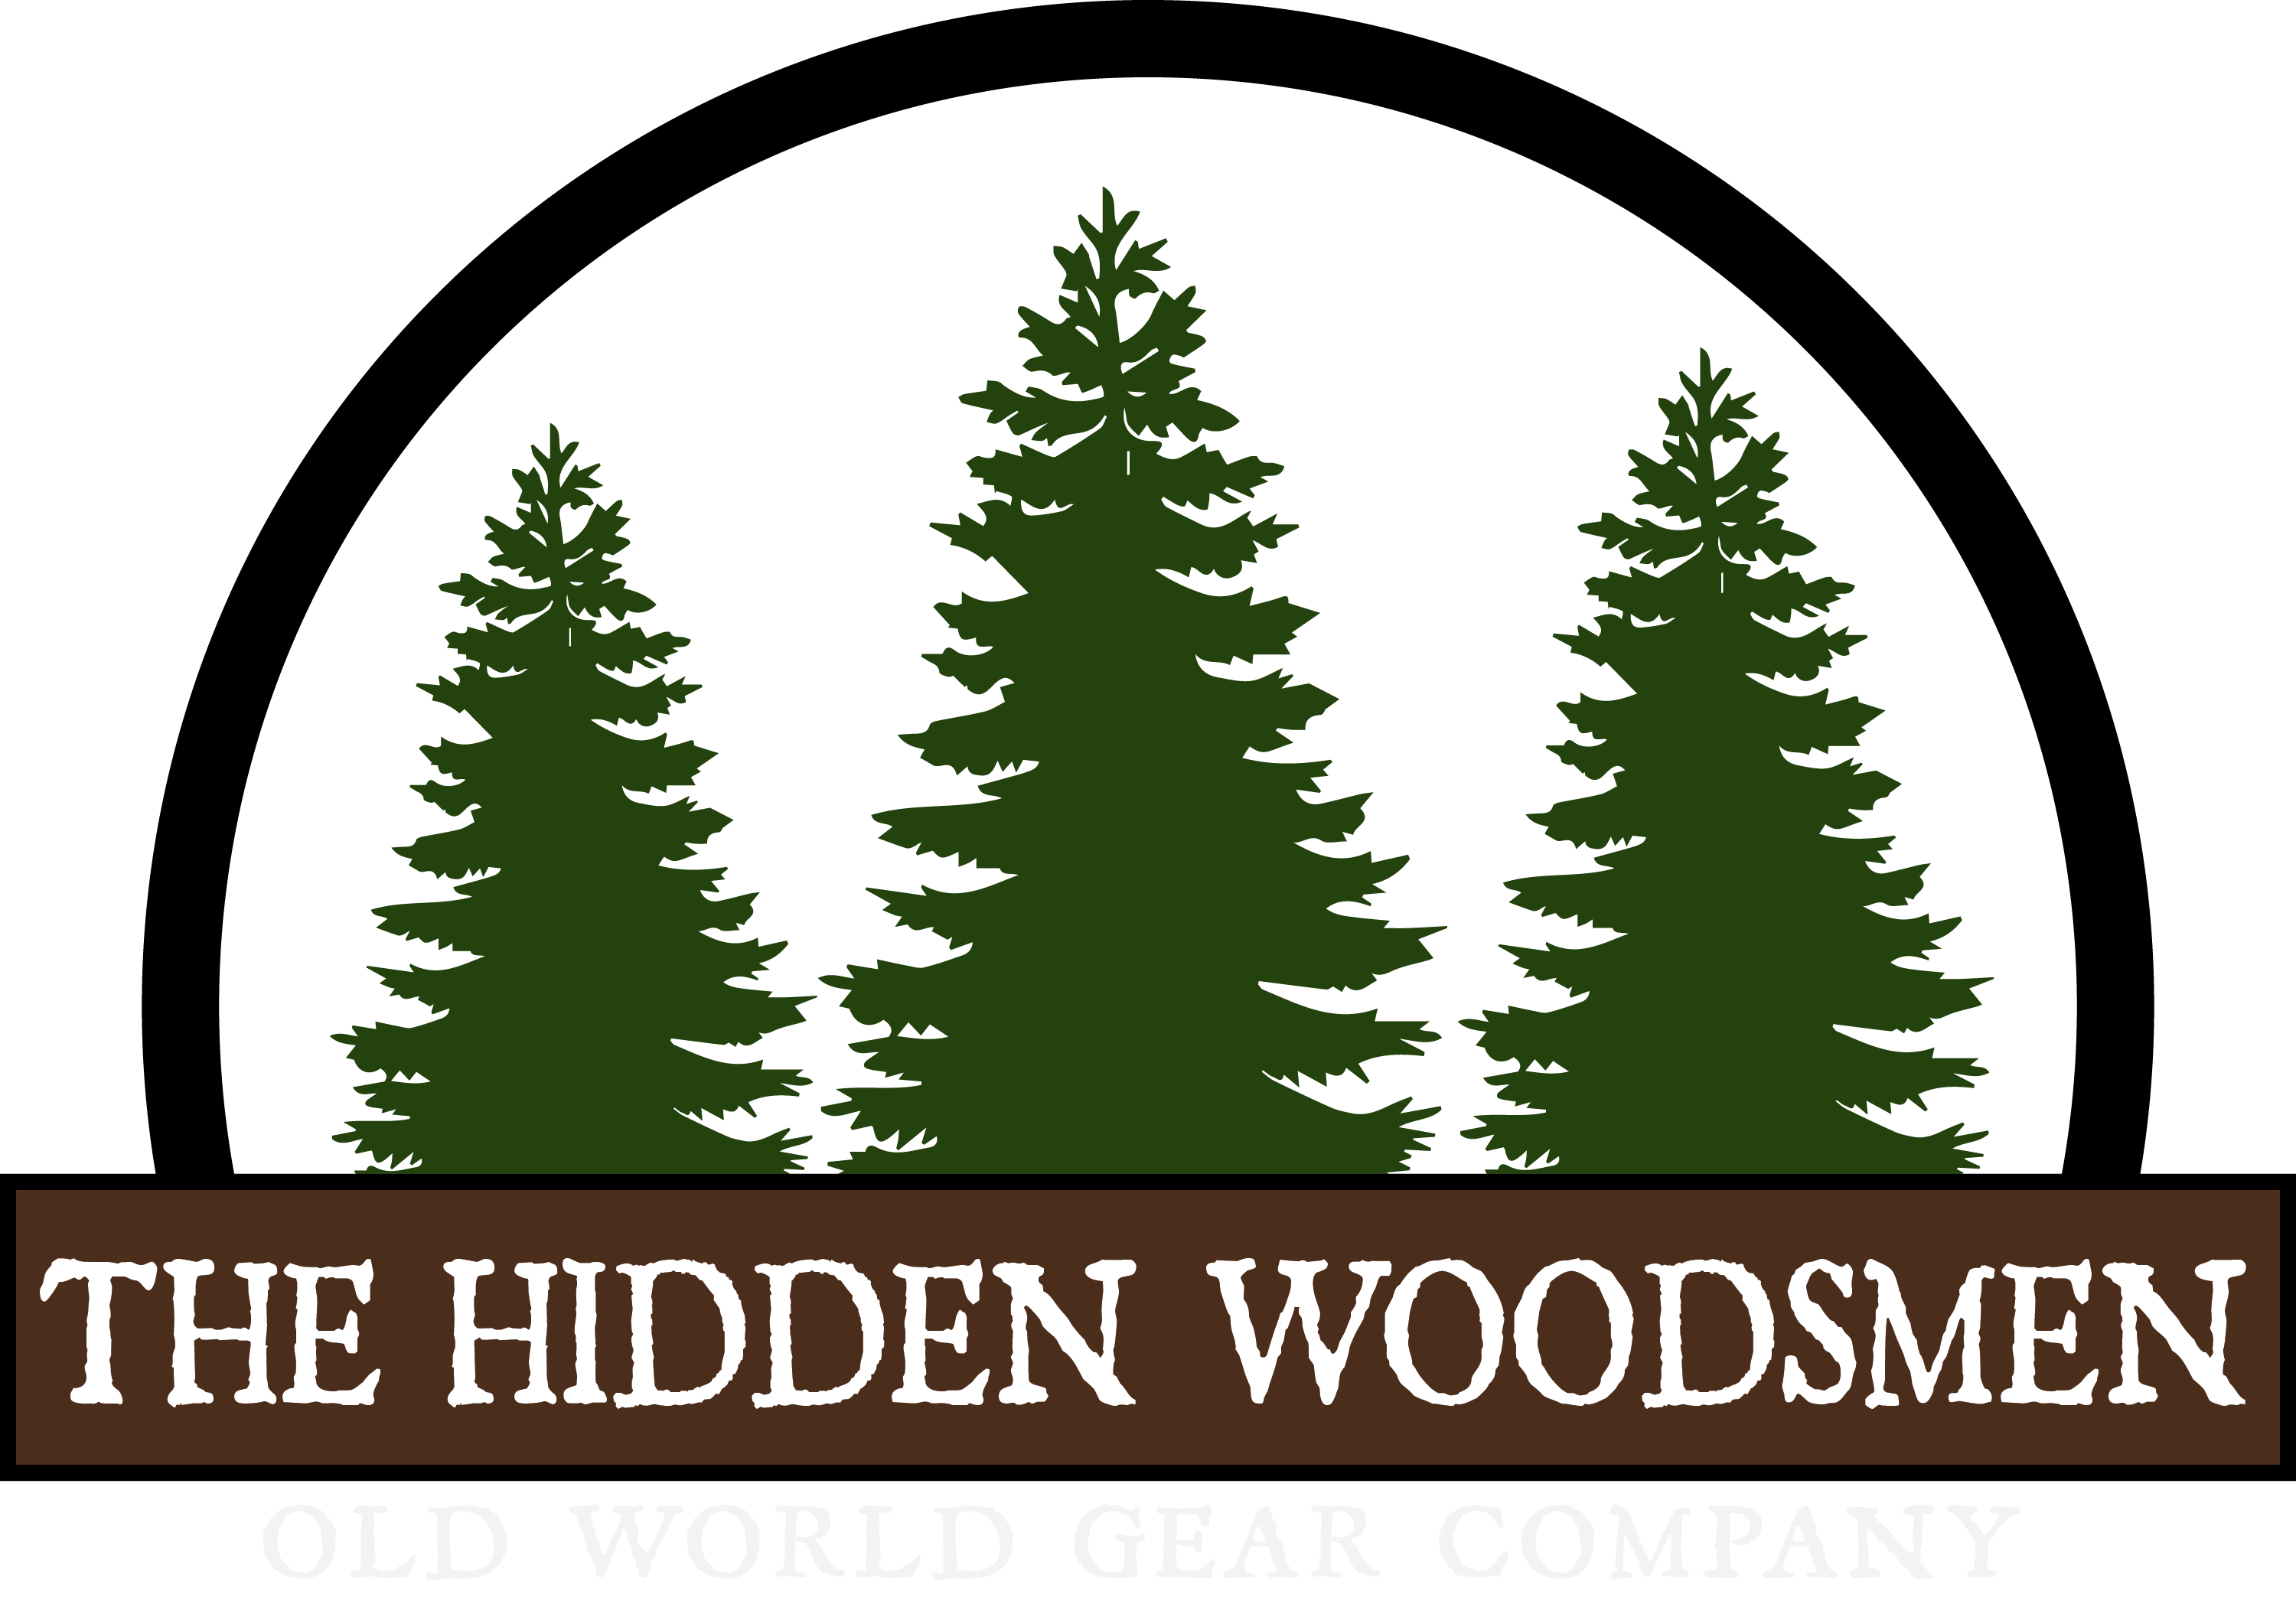 The Hidden Woodsmen